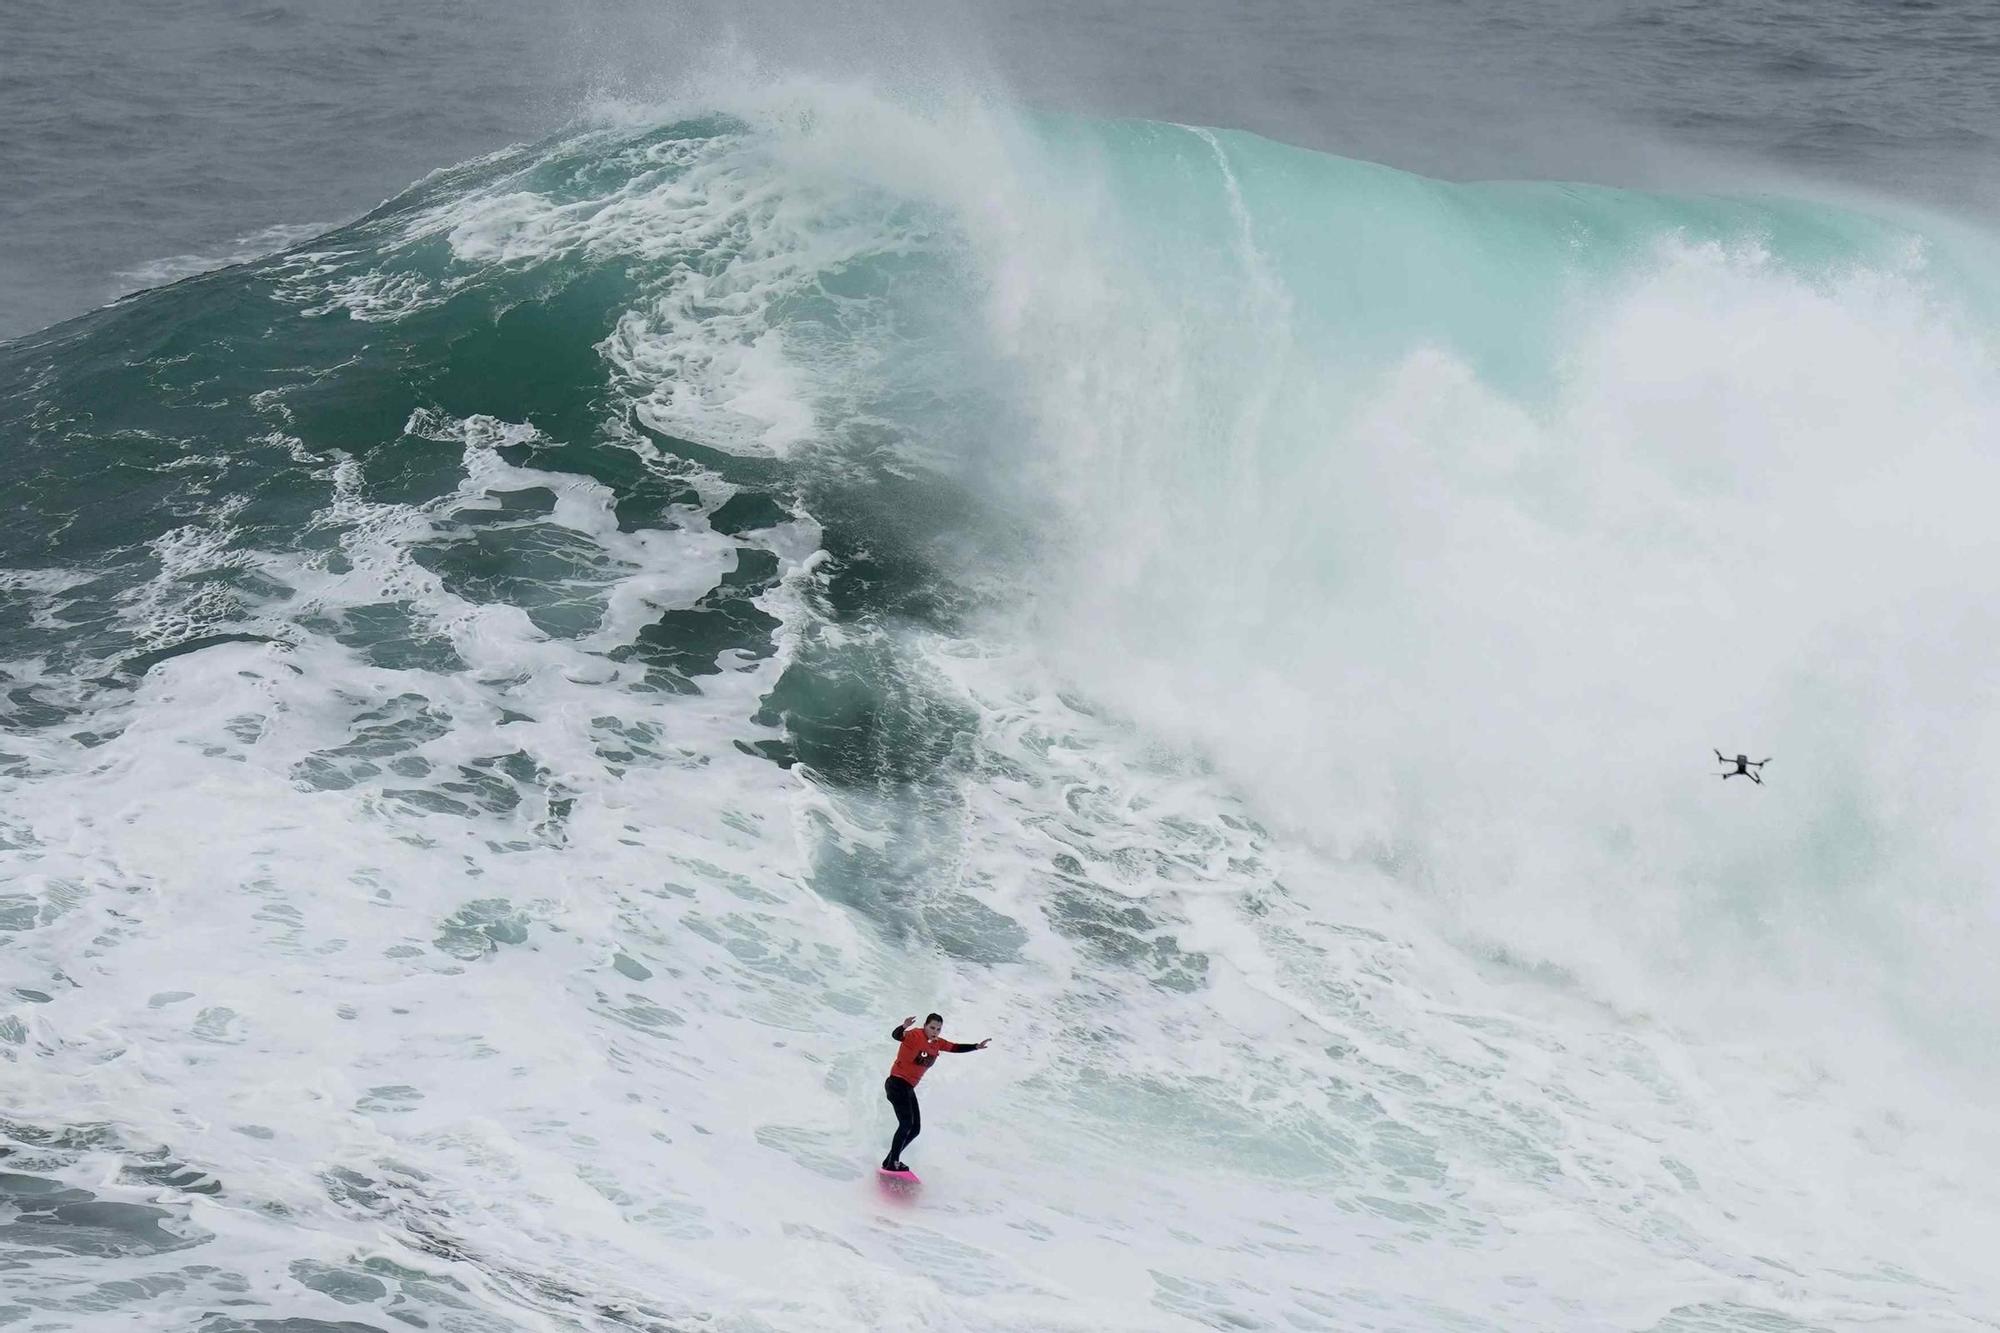 Campionat de surf d'onades gegants a Nazaré